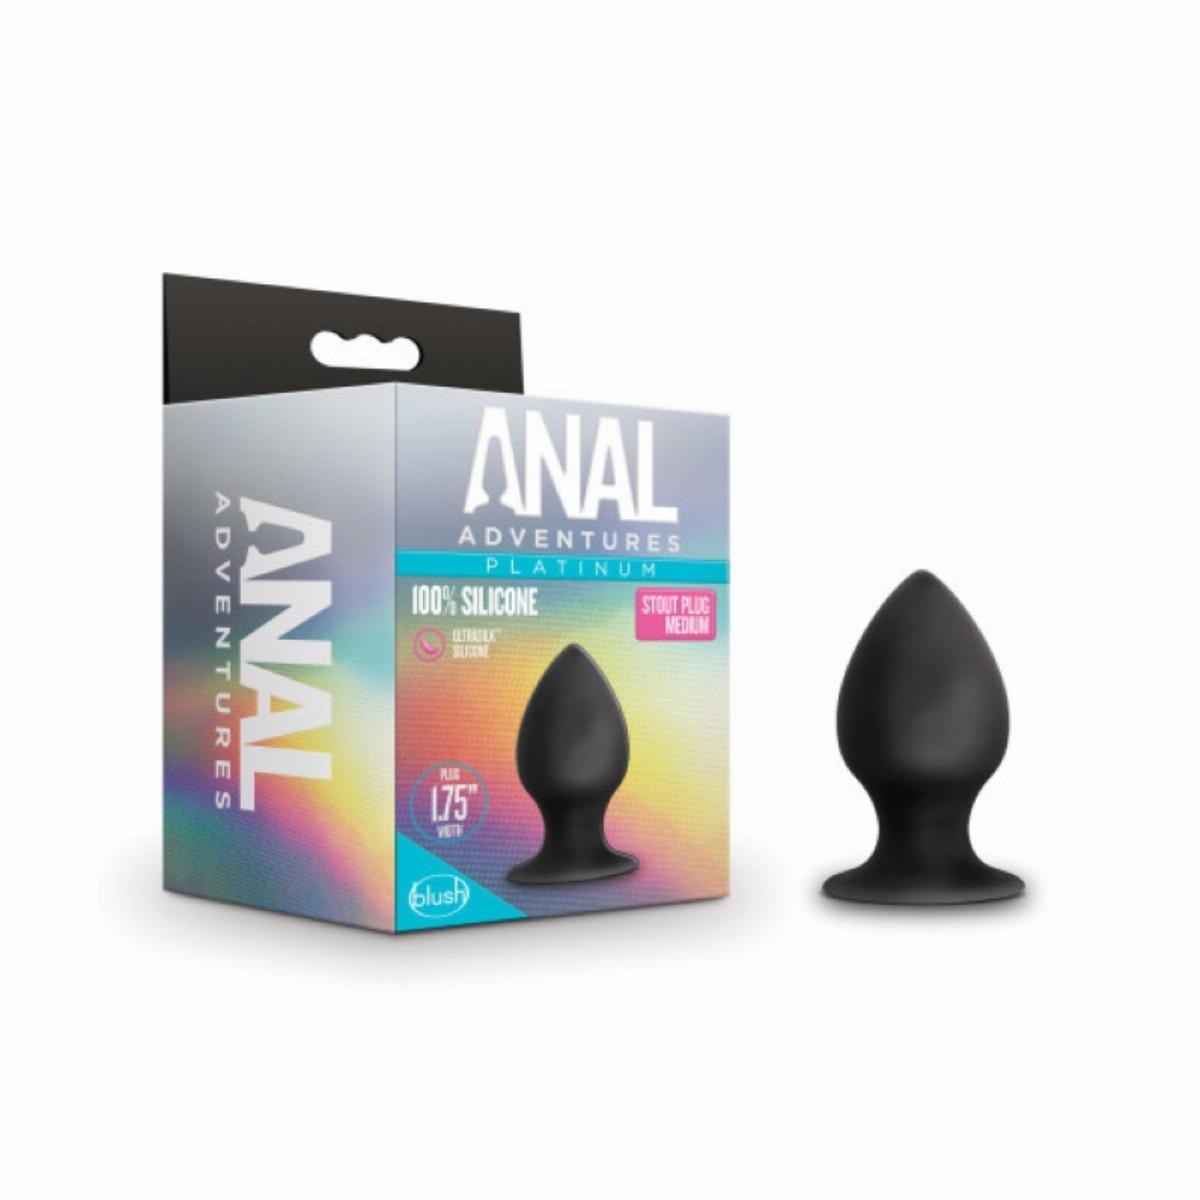 Zwarte stout butt plug met spitse punt, gemaakt van siliconen, breng je makkelijk in. De butt plug heeft het formaat medium en is van Anal Adventures. Deze butt plug is te koop bij Flavourez.